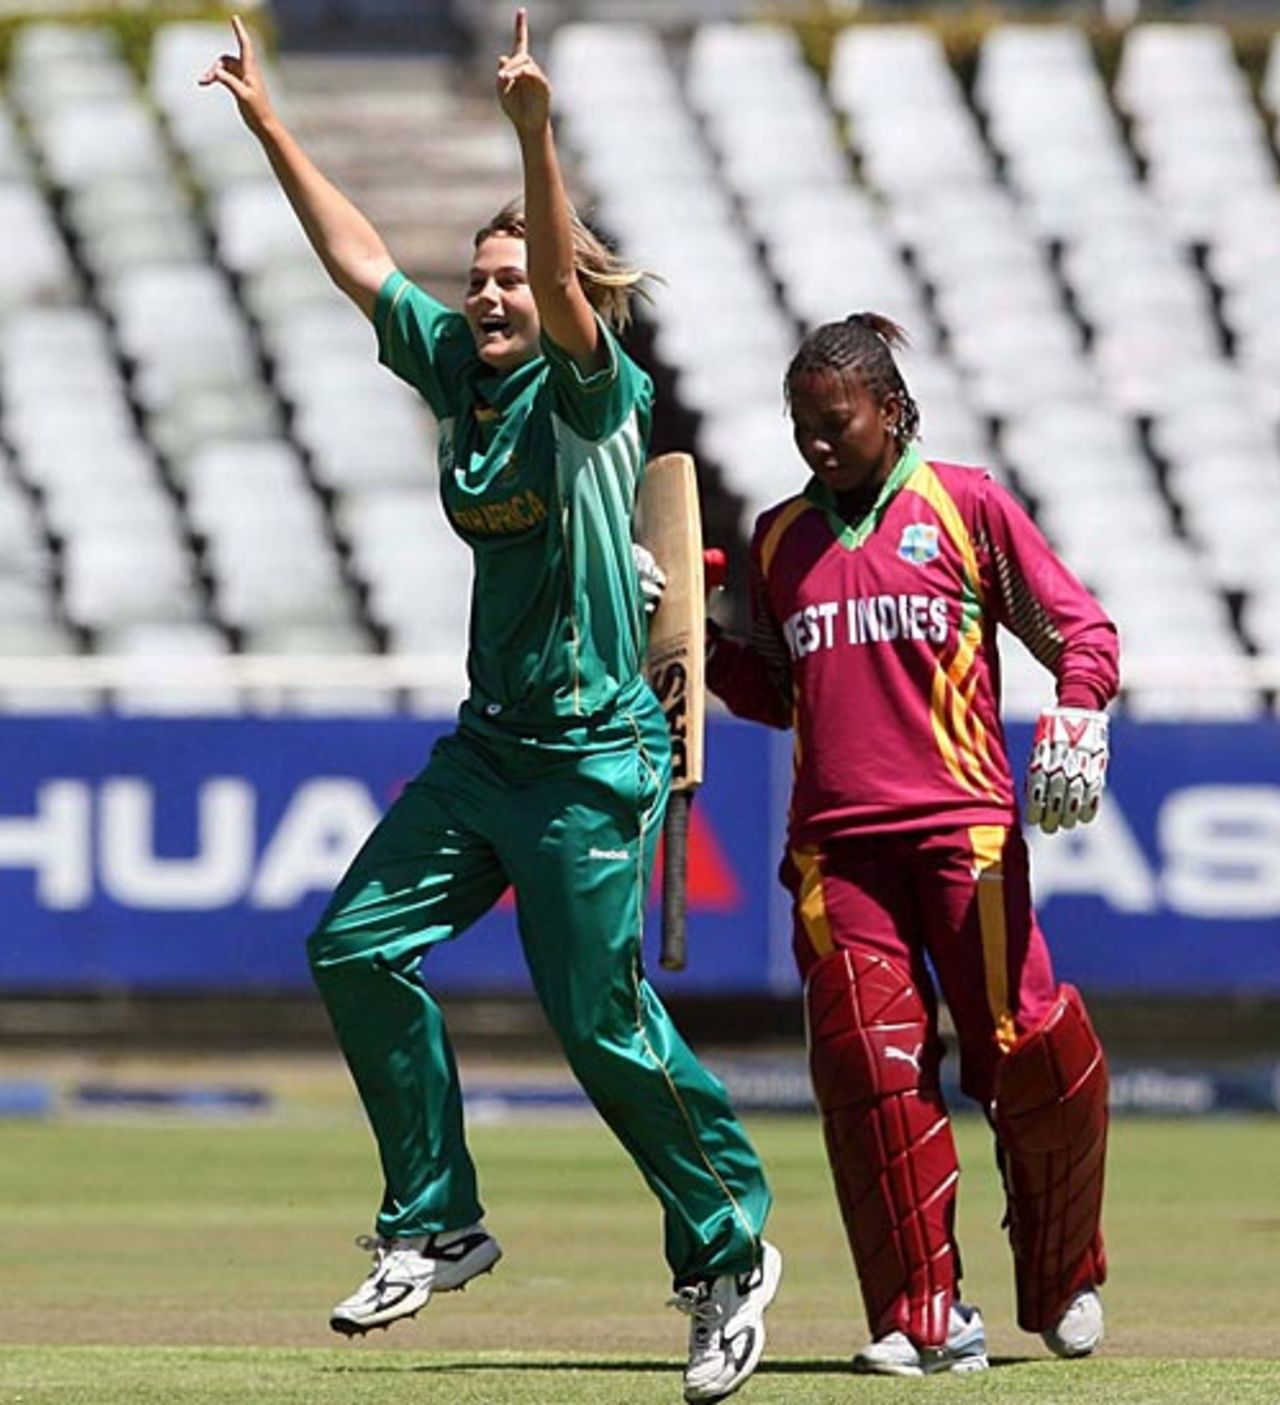 Dane van Niekerk took 3 for 25 against West Indies, South Africa v West Indies, 2nd women's ODI, Newlands, October 18, 2009